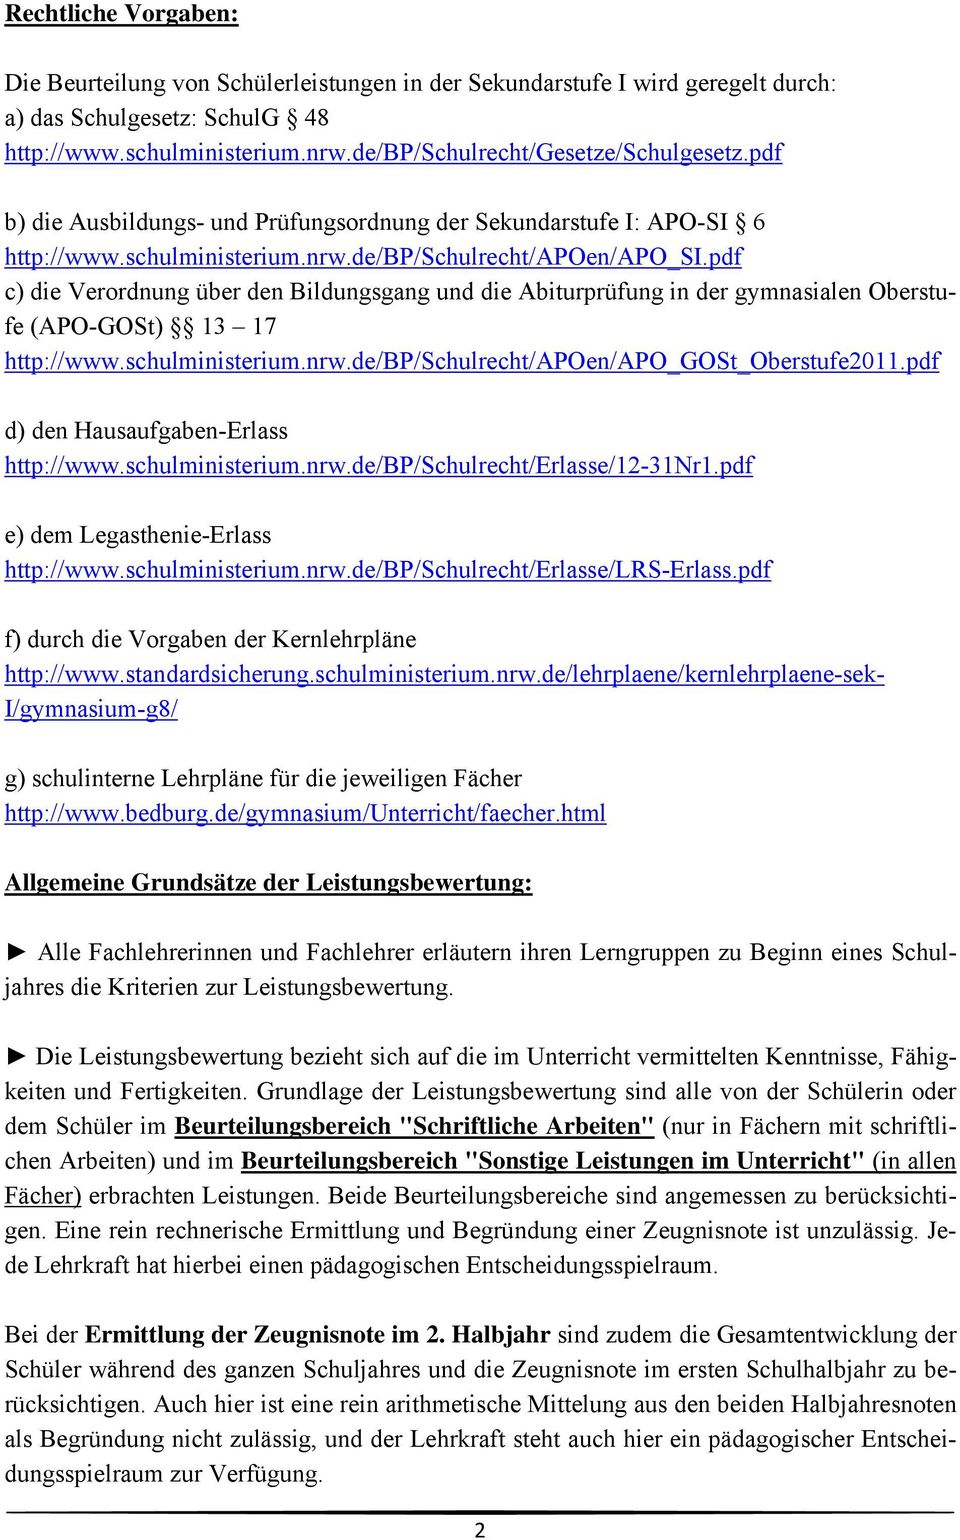 pdf c) die Verordnung über den Bildungsgang und die Abiturprüfung in der gymnasialen Oberstufe (APO-GOSt) 13 17 http://www.schulministerium.nrw.de/bp/schulrecht/apoen/apo_gost_oberstufe2011.